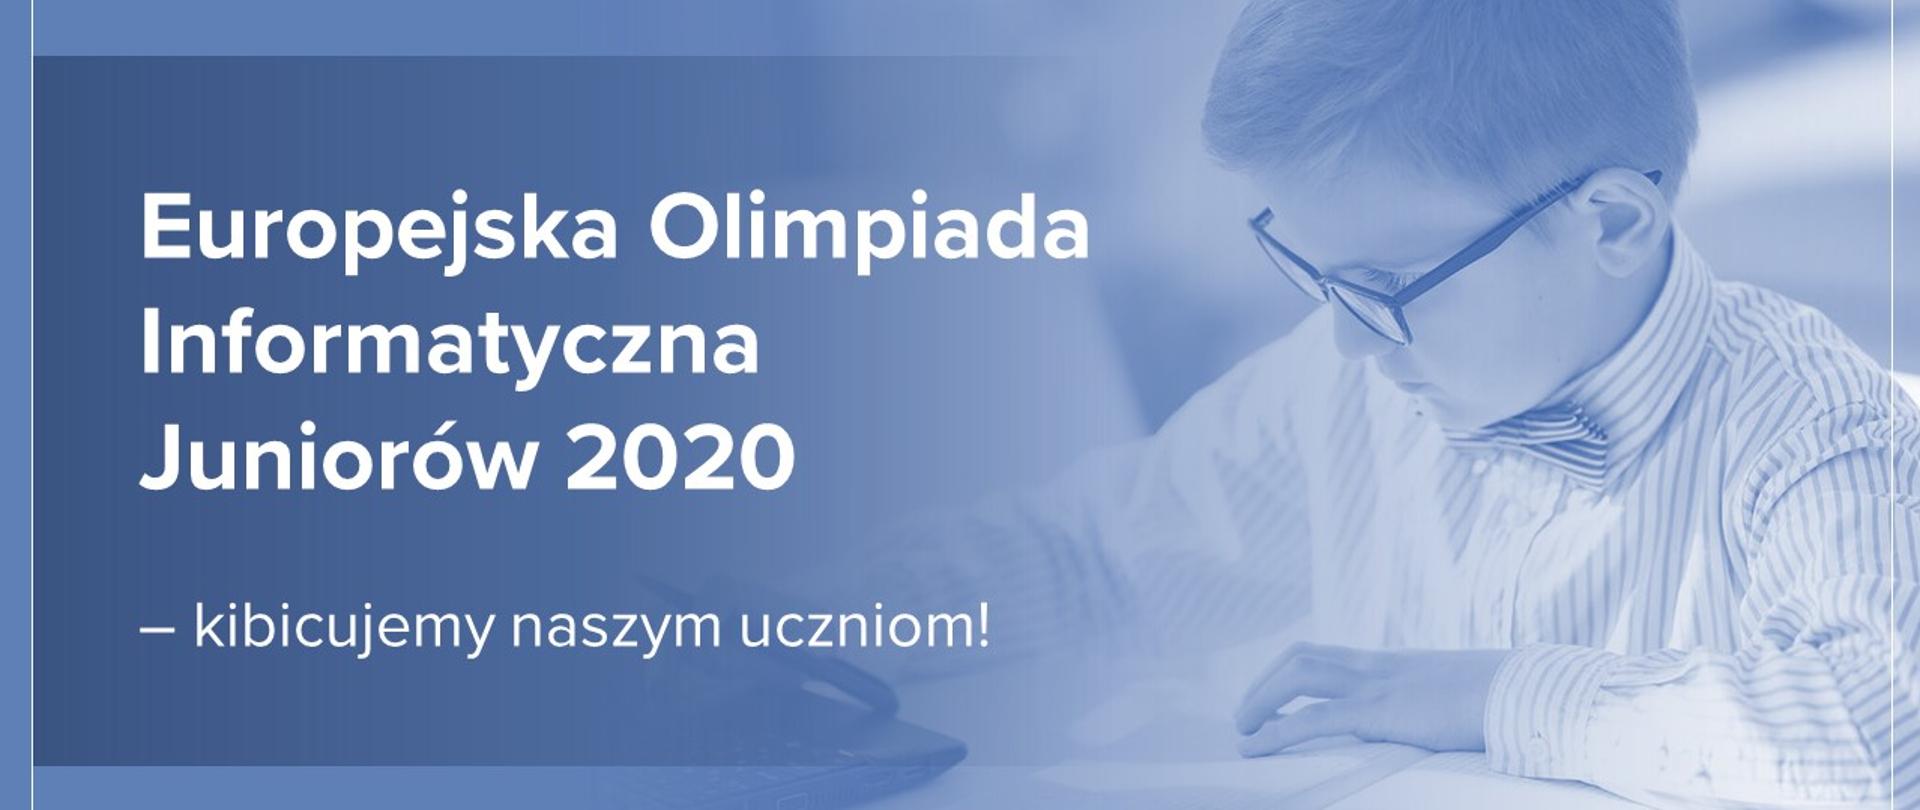 Chłopiec w okularach siedzi przy laptopie. Obok napis "Europejska Olimpiada Informatyczna Juniorów 2020 – kibicujemy naszym uczniom!".